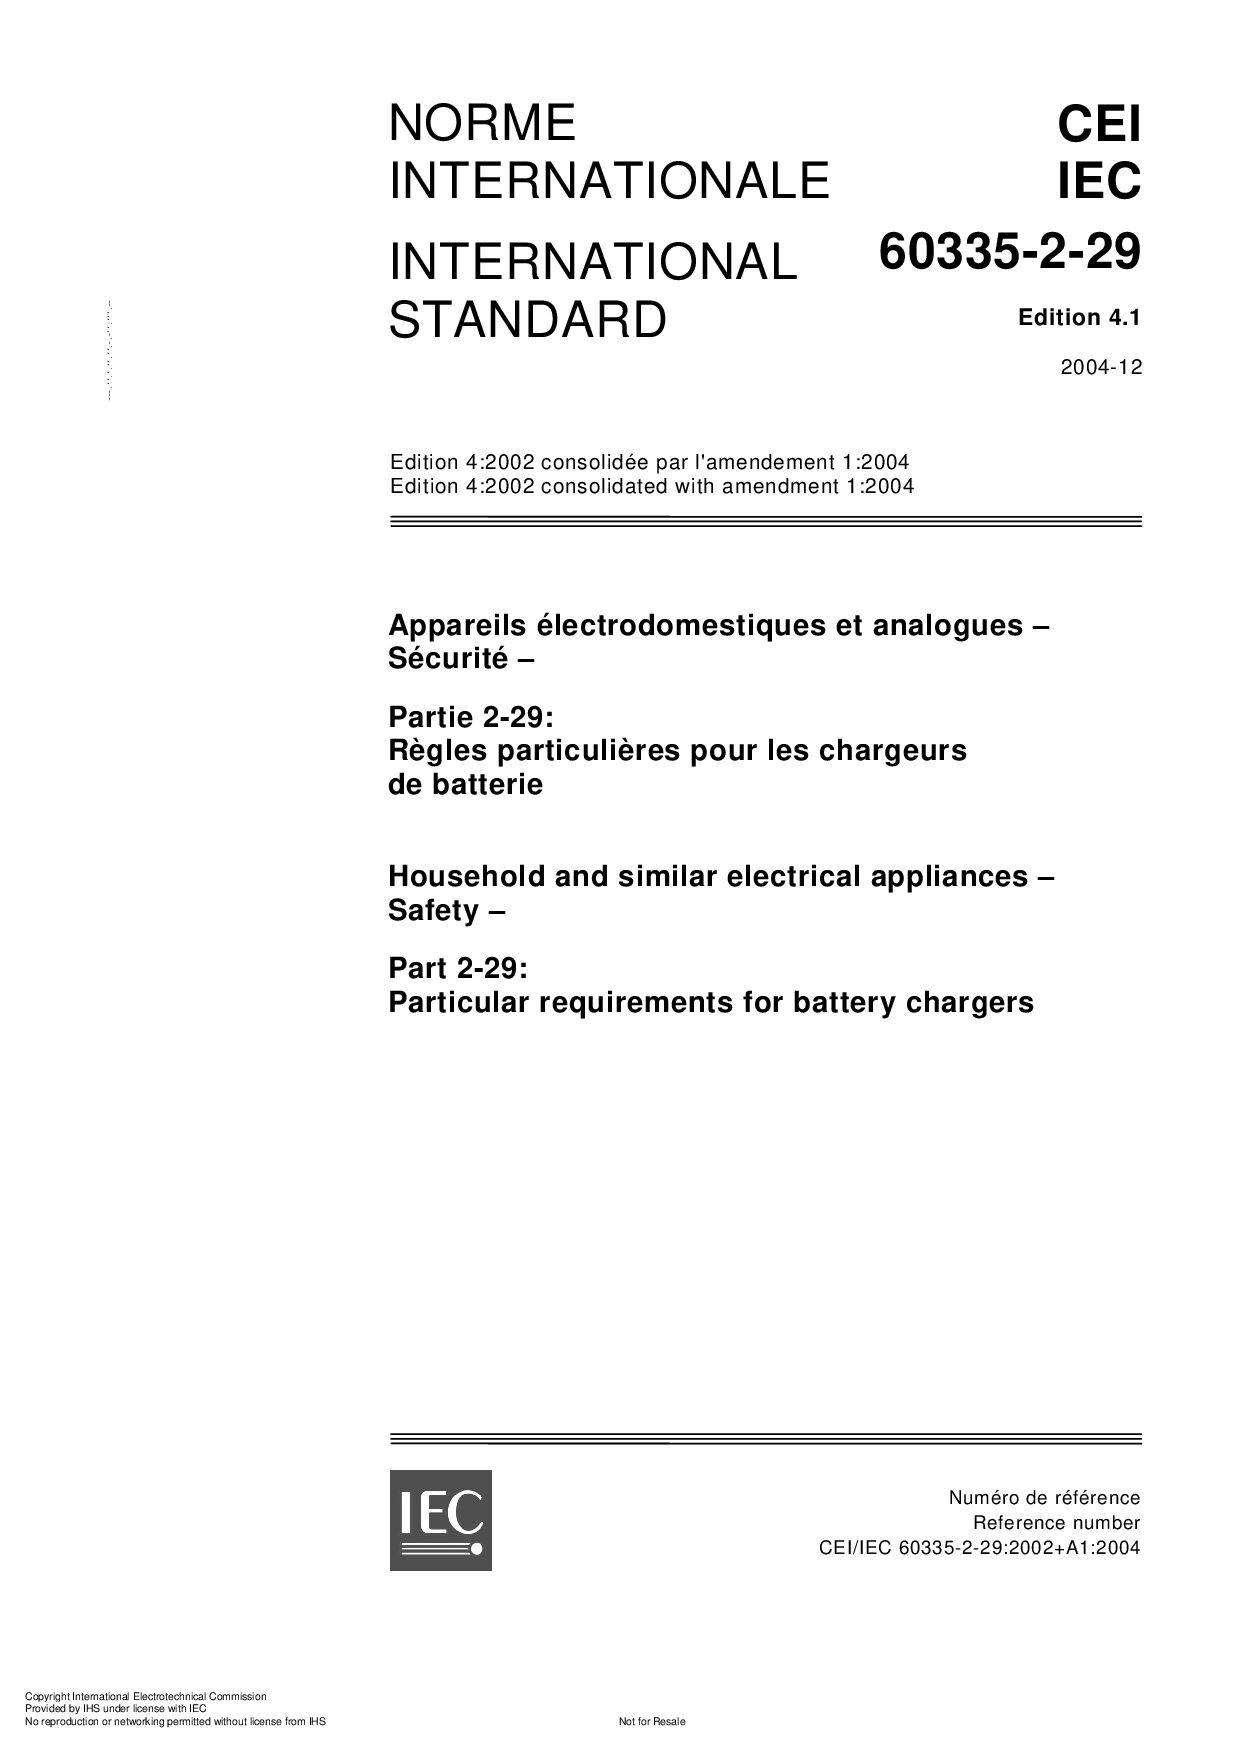 IEC 60335-2-29:2004